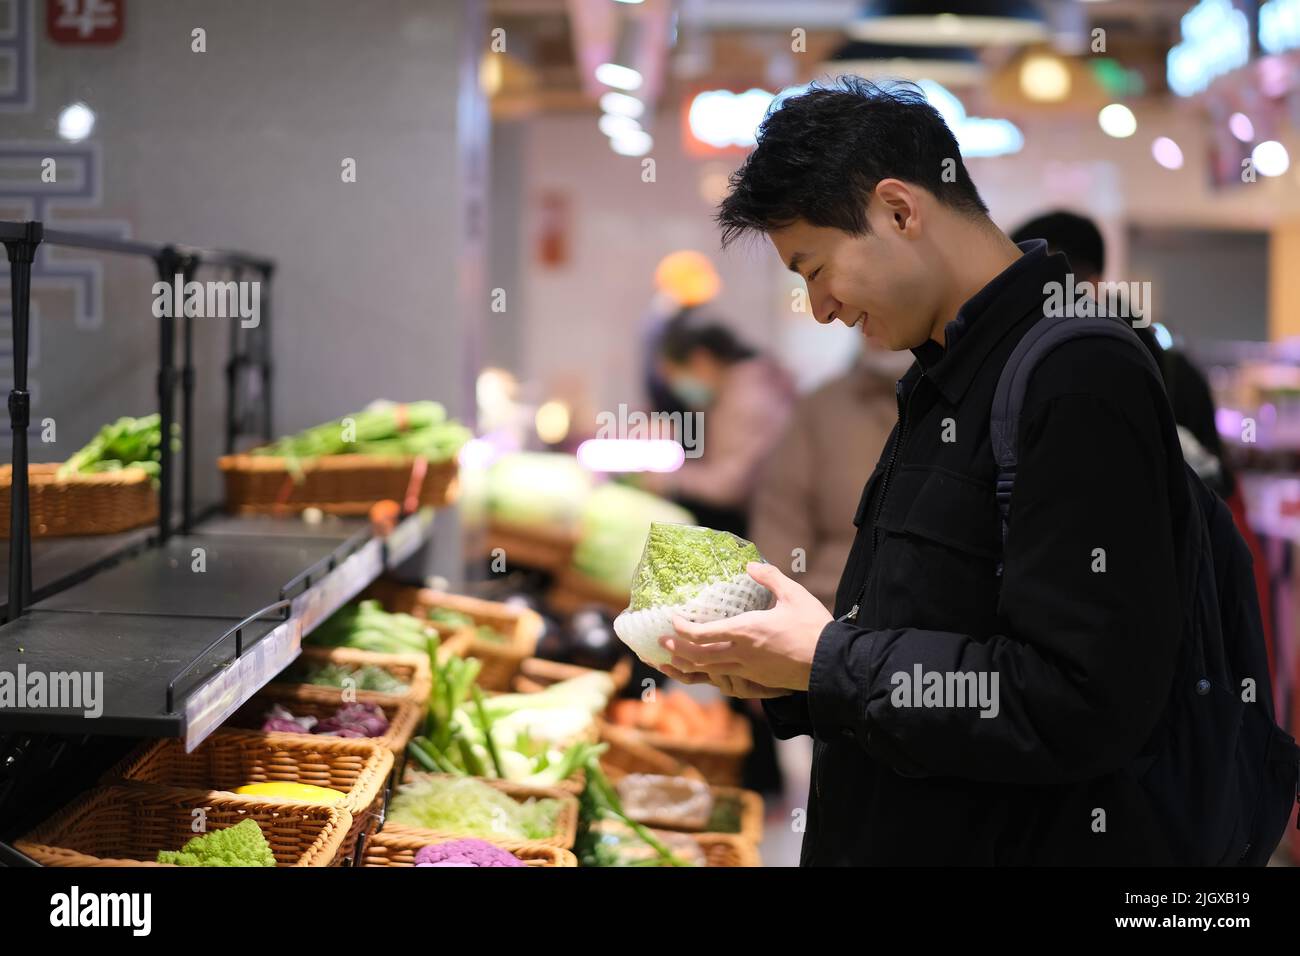 Un jeune homme asiatique cueillant des légumes dans une épicerie. Un homme souriant fait du shopping dans un supermarché Banque D'Images